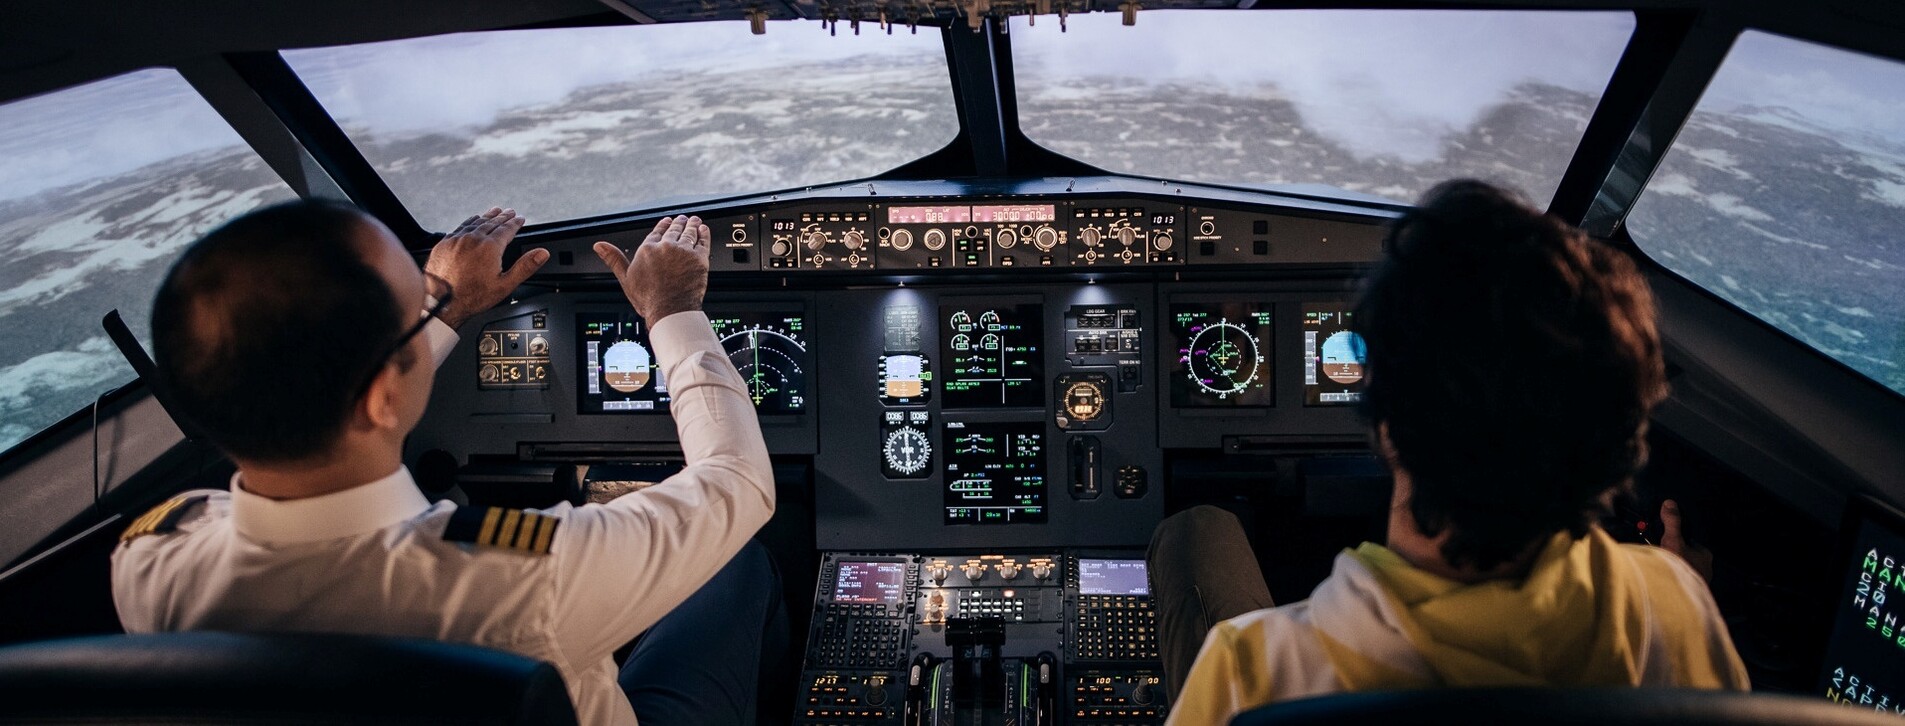 Fotoğraf 1 - İstanbul'da İki Kişi için Airbus A320 Uçuş Simülatörü Deneyimi